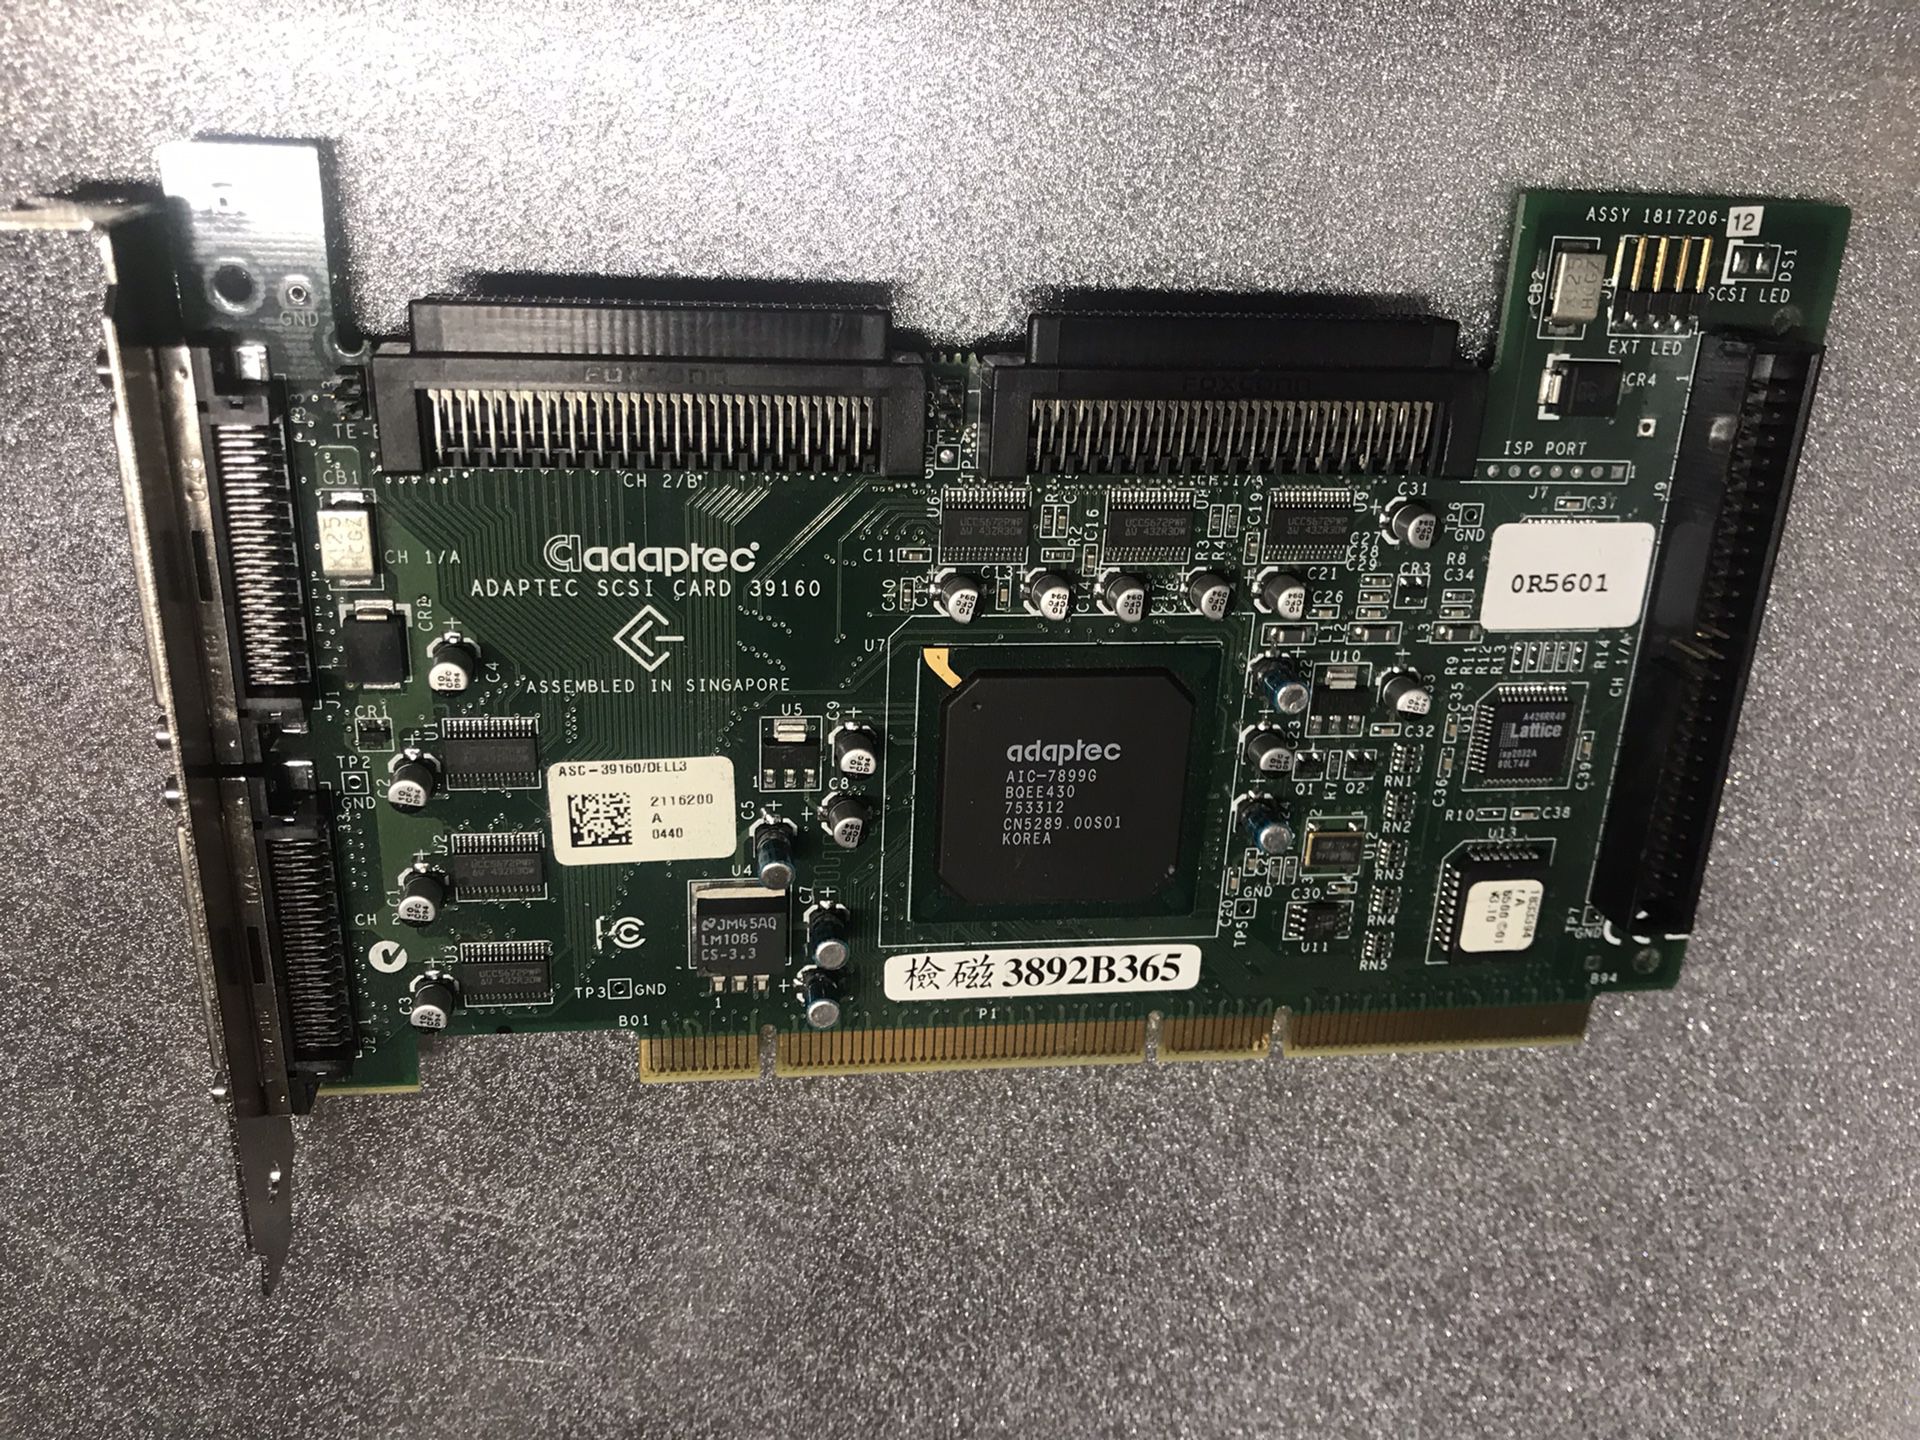 Computer. Parts ASC-39160 Dual Channel. SCSI CONTROL 3892B365 0R5601